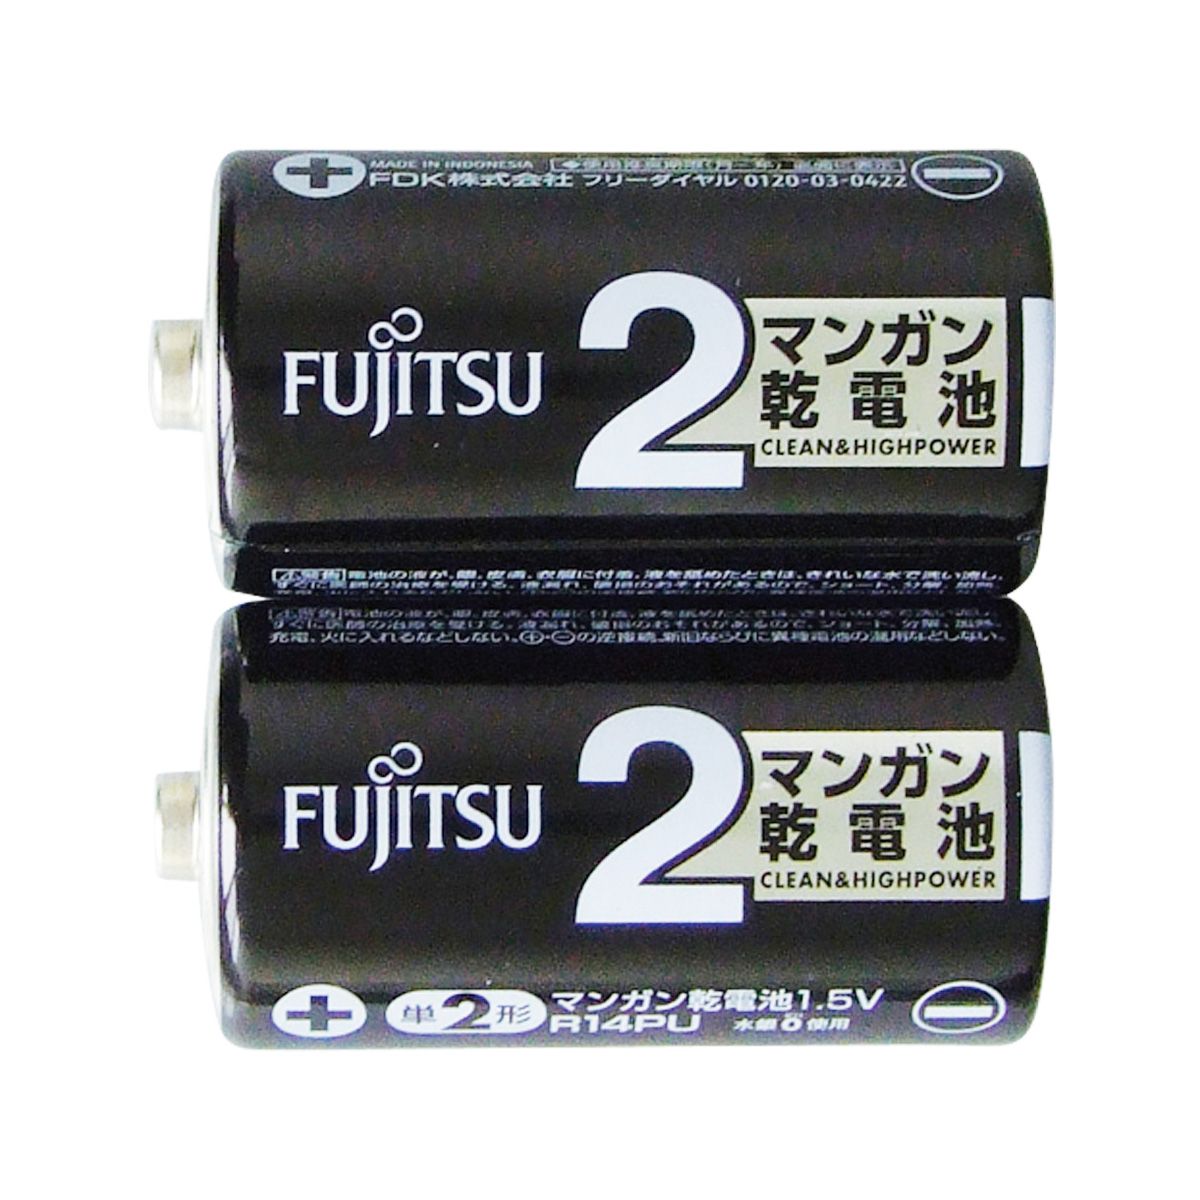 富士通 黒マンガン乾電池単2 2P 0474/362214